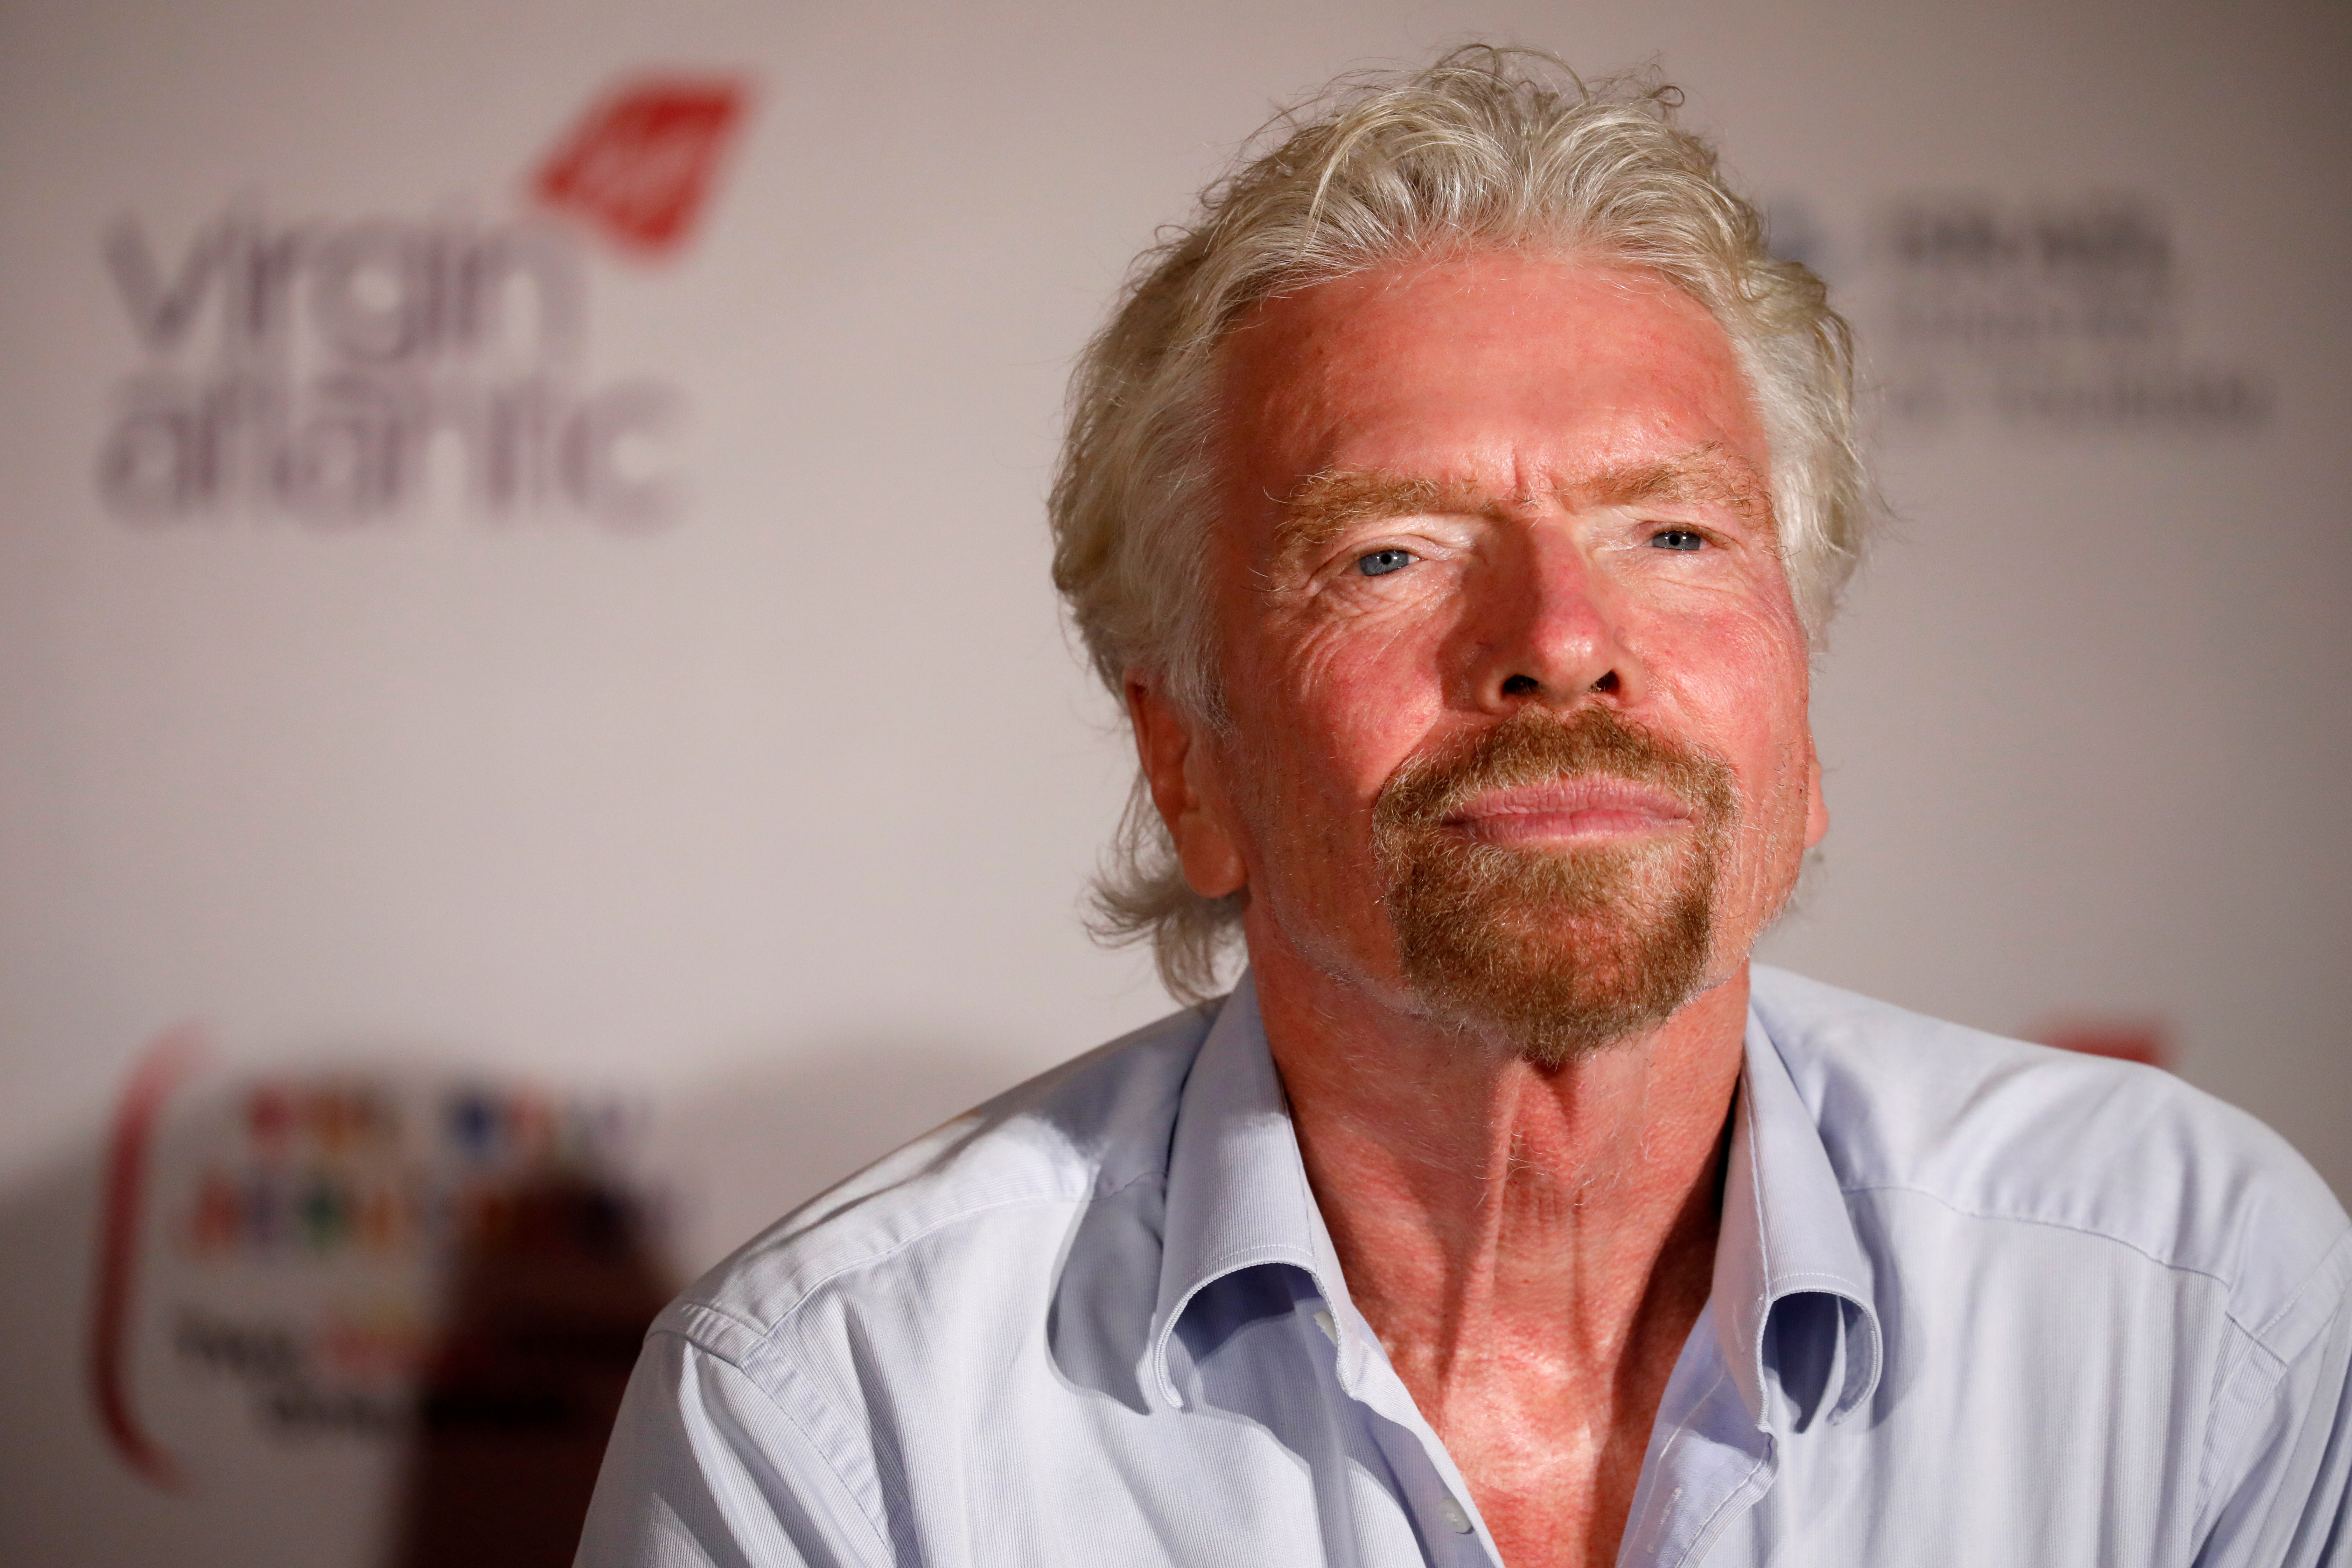 Virgin's Richard Branson attends a news conference after landing at the Ben Gurion international airport near Tel Aviv